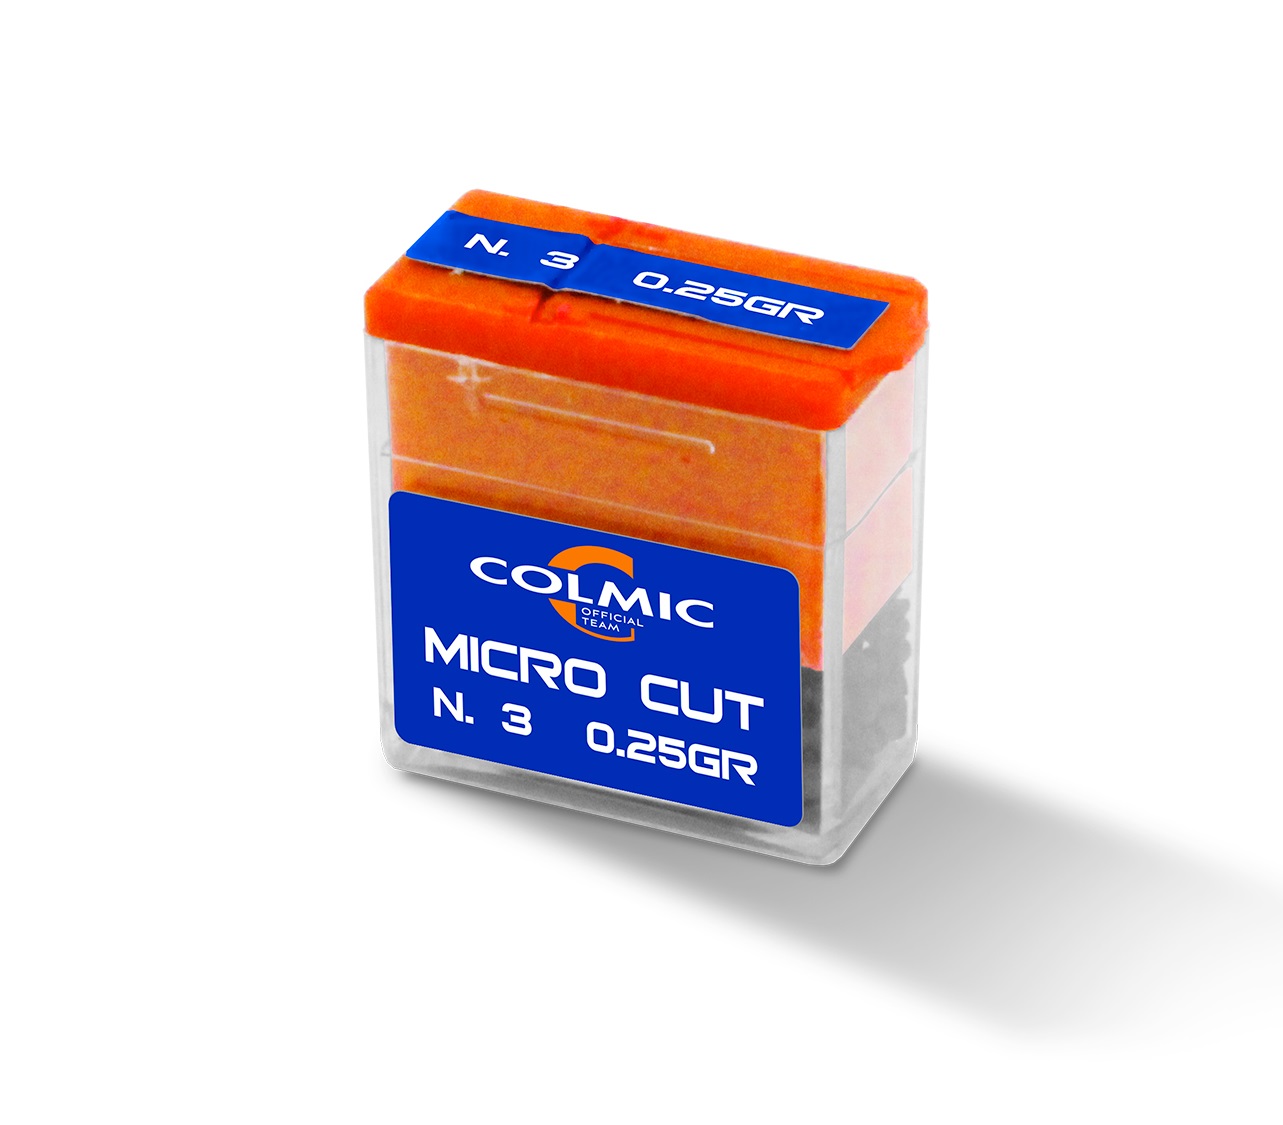 Colmic Dispenser Micro Cut Knijplood N. 8 (0.064g)